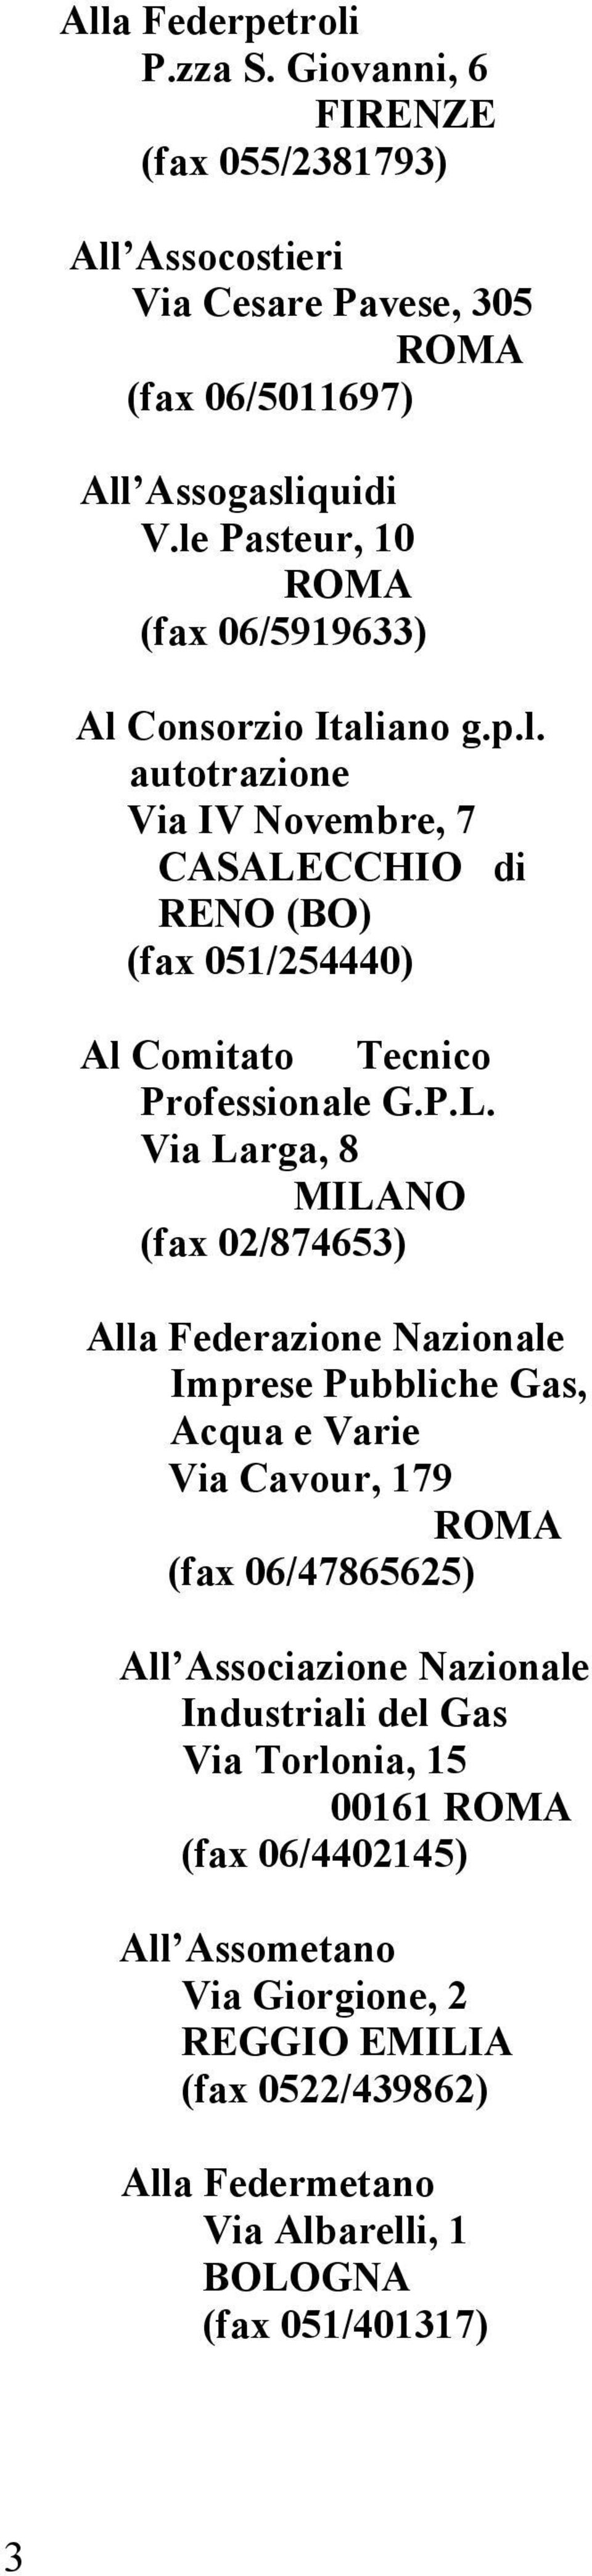 P.L. Via Larga, 8 MILANO (fax 02/874653) Alla Federazione Nazionale Imprese Pubbliche Gas, Acqua e Varie Via Cavour, 179 (fax 06/47865625) All Associazione Nazionale